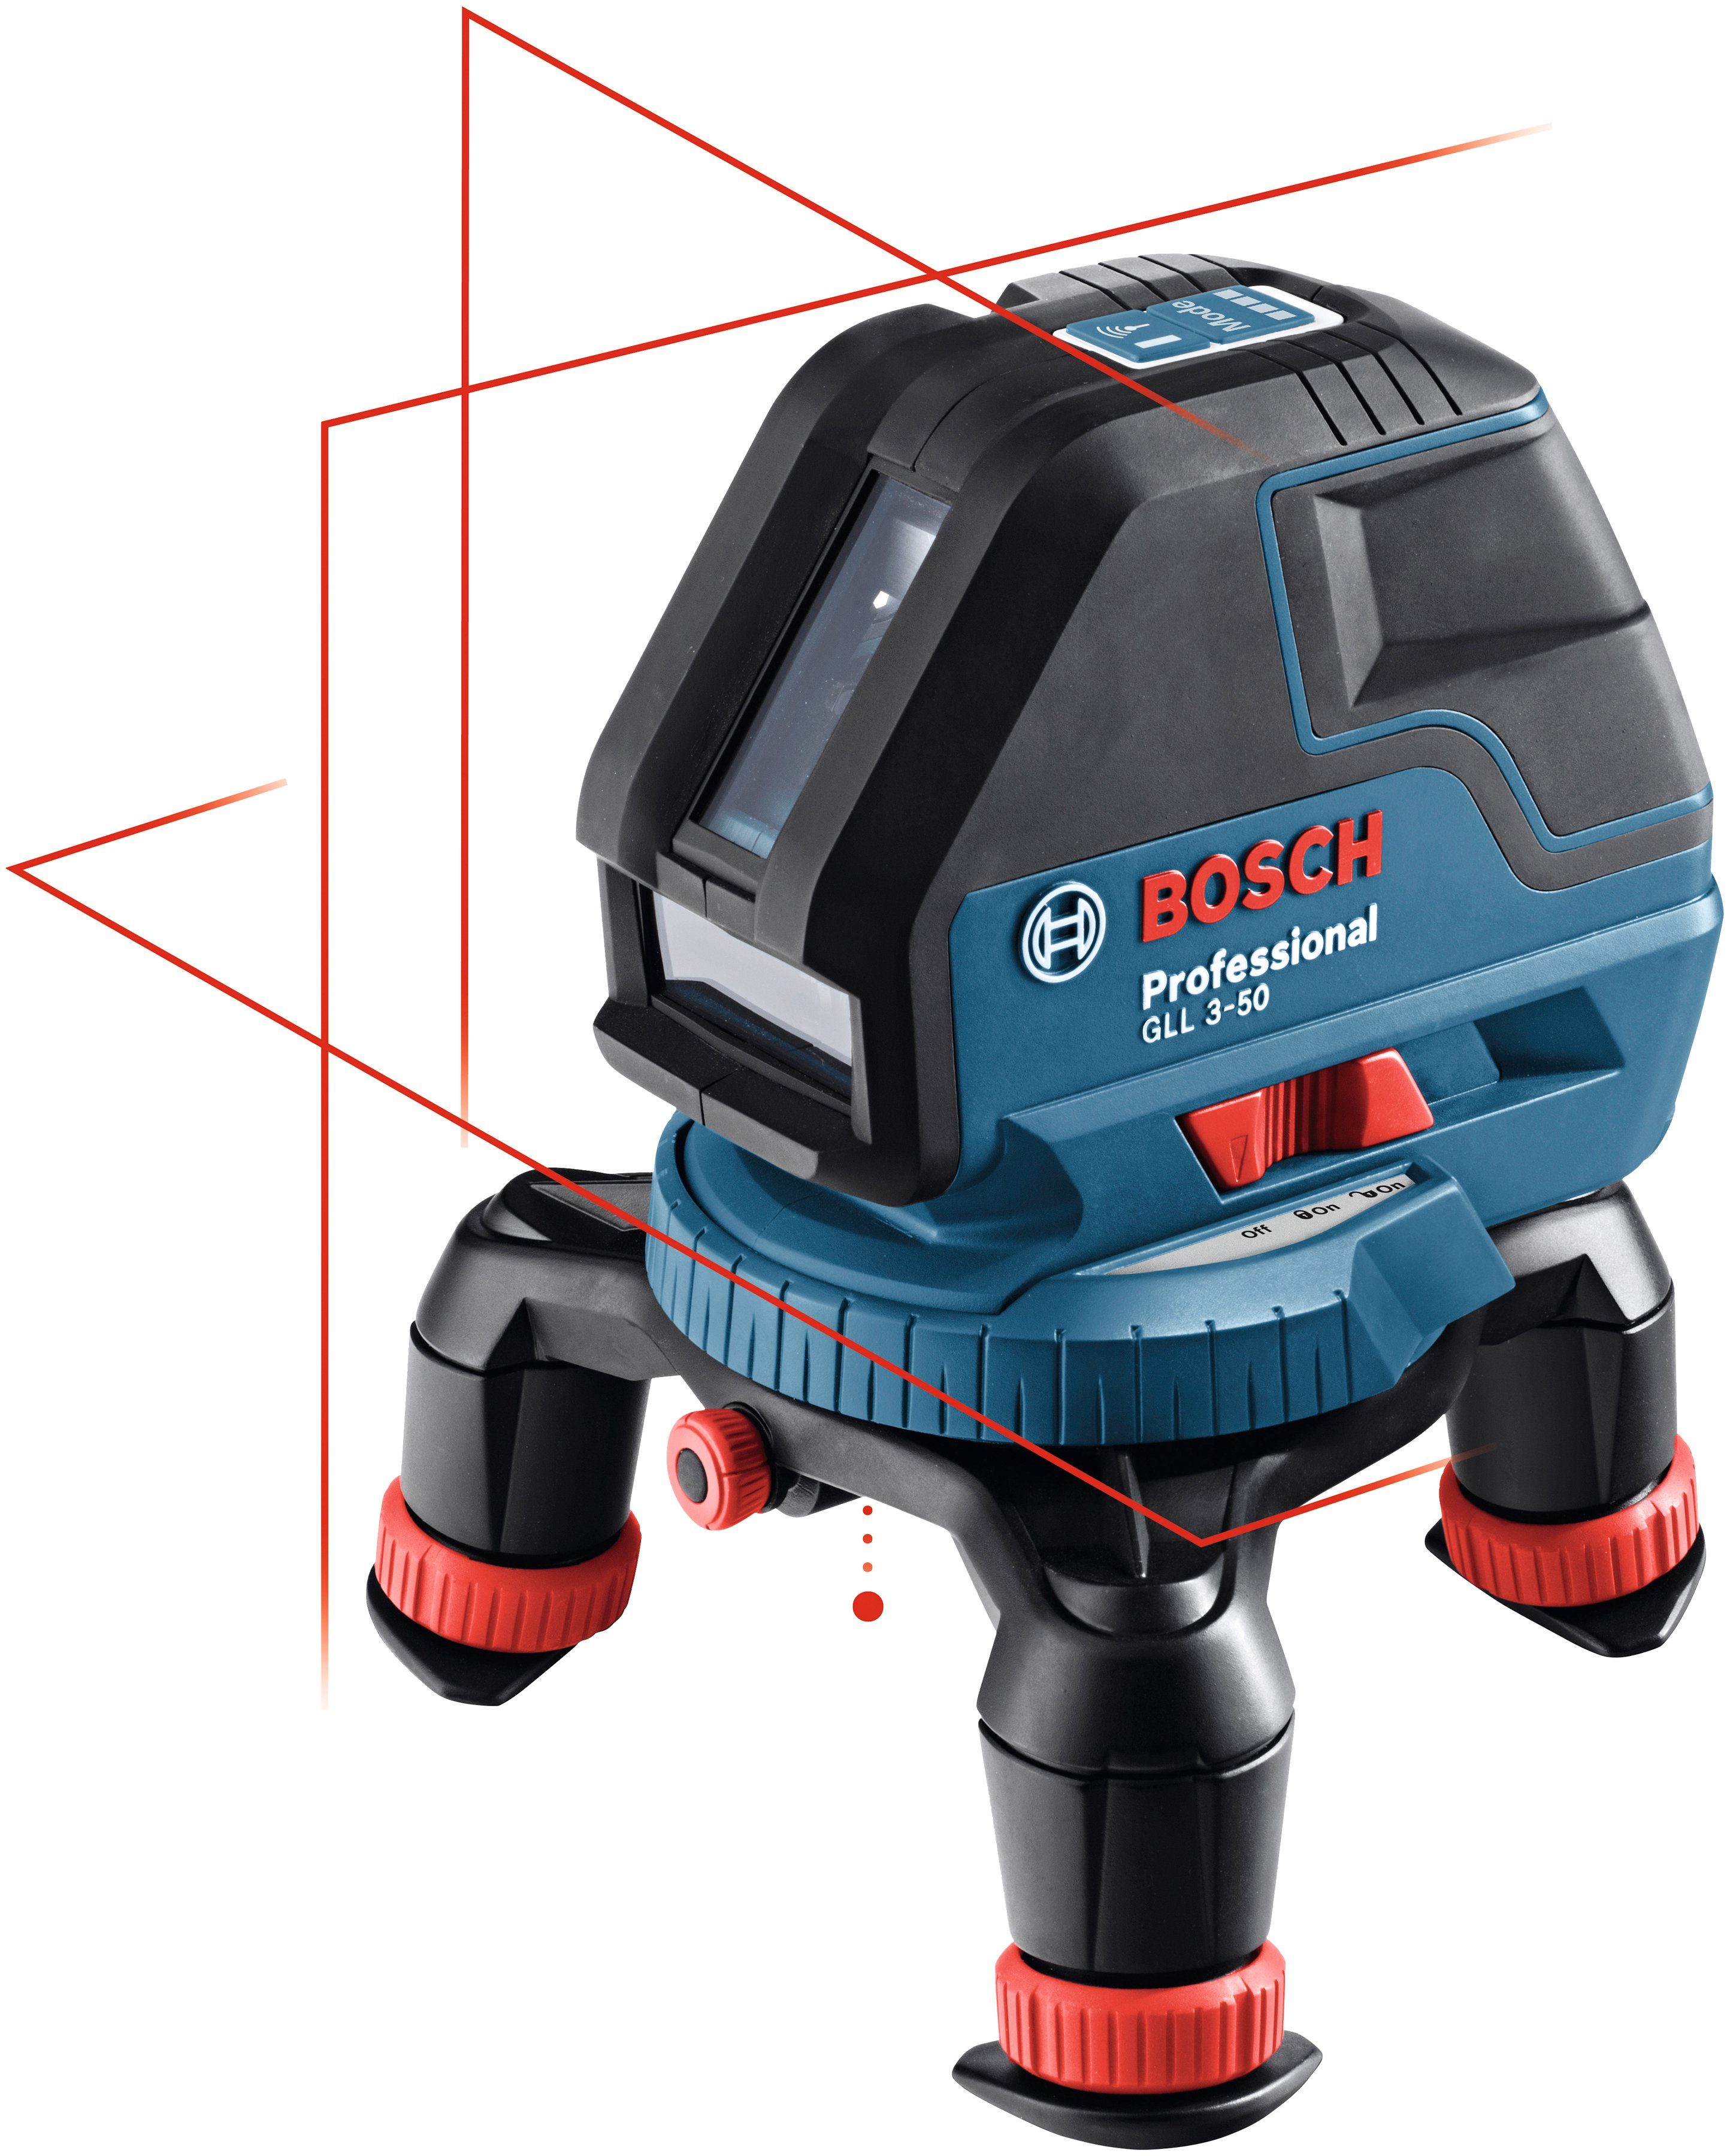 Professional, Linienlaser Empfänger (mit 10m Max. Reichweite: Professional GLL 3-50 50m) Bosch